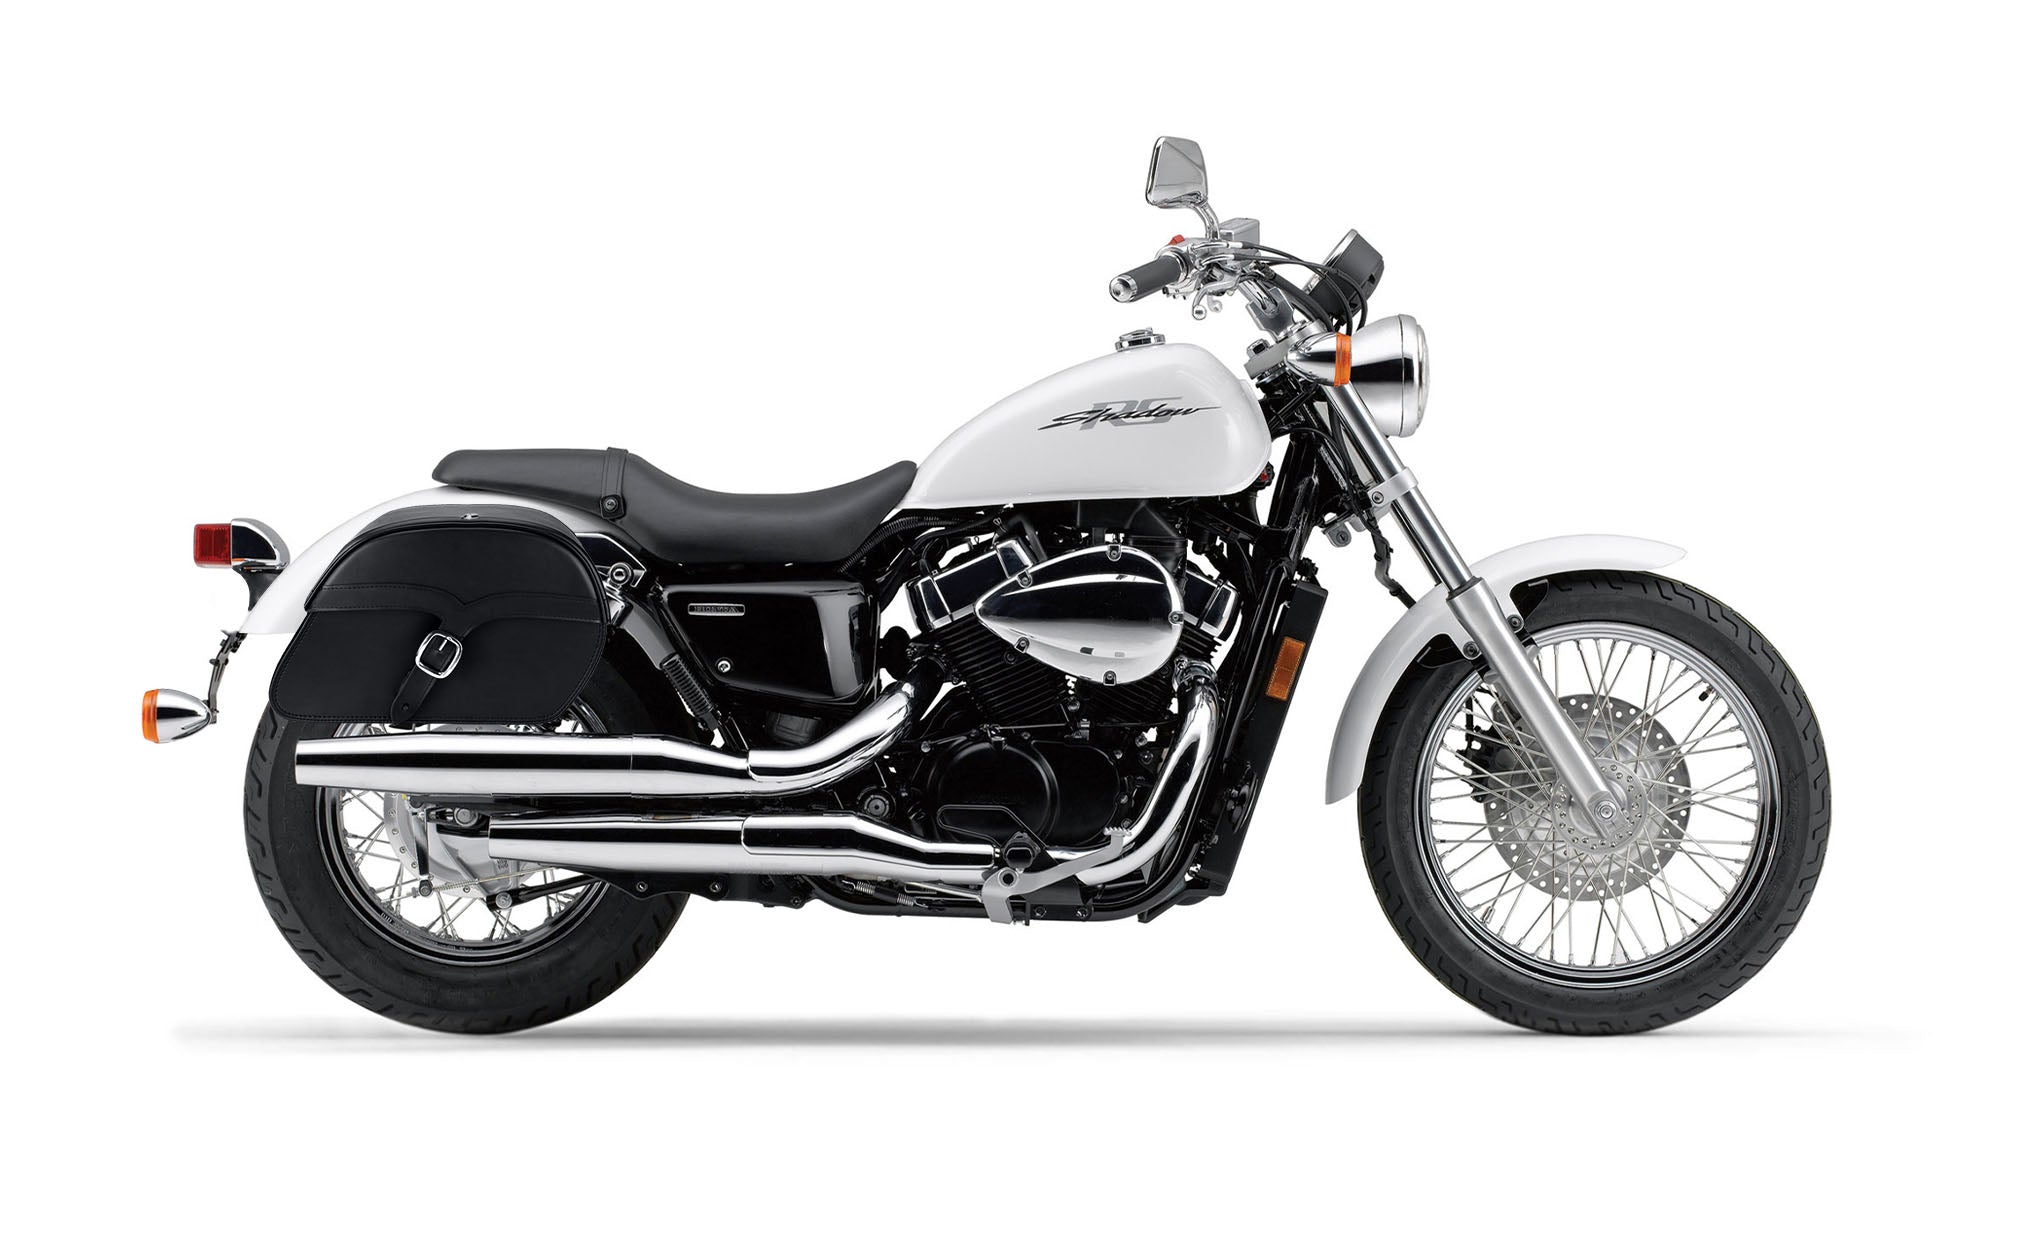 Viking Vintage Medium Honda Shadow 750 Rs Leather Motorcycle Saddlebags on Bike Photo @expand